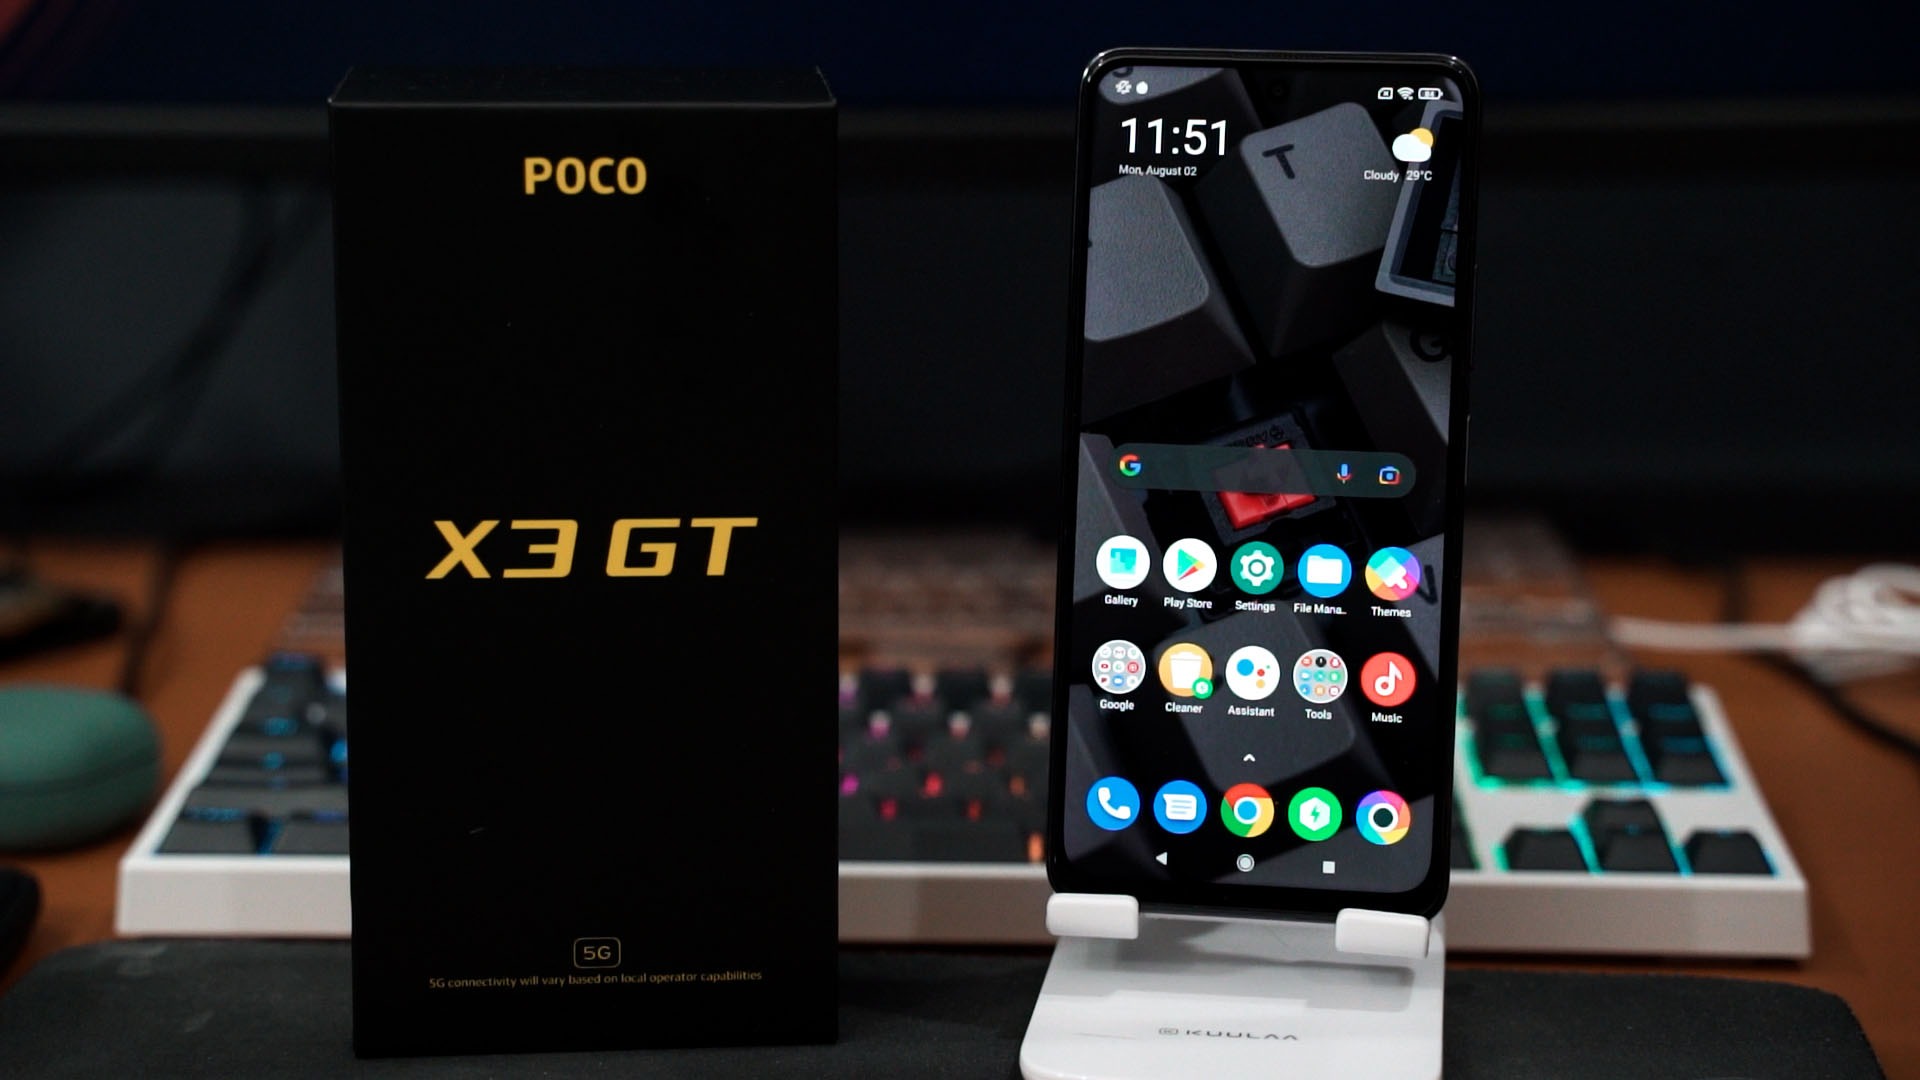 Điện thoại POCO X3 GT cấu hình ổn khi sử dụng con chip Dimensity 1100